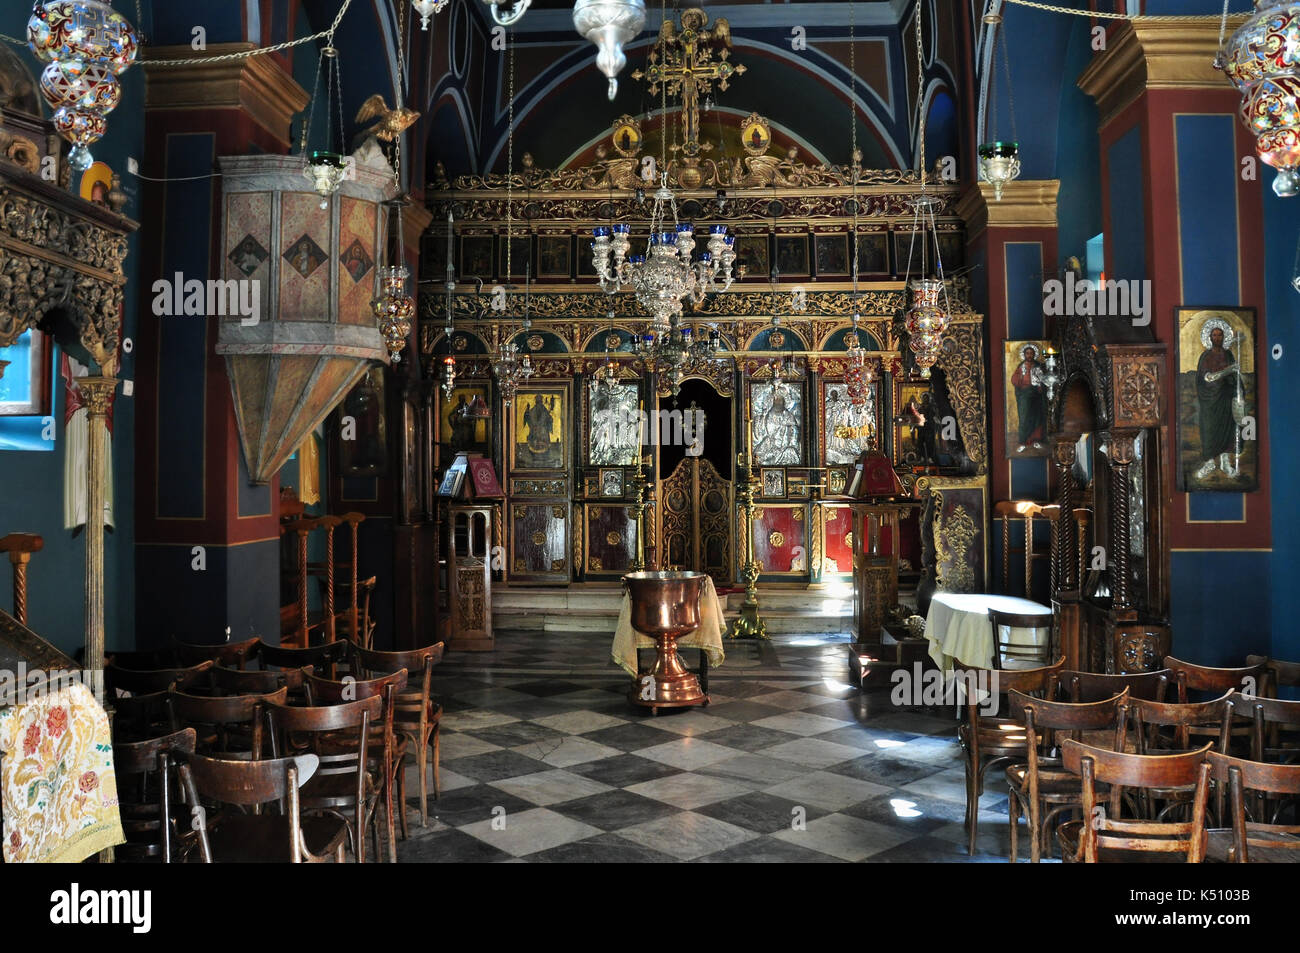 Athènes, Grèce - septembre 8, 2013 : église orthodoxe grecque de l'intérieur. retable doré avec des icônes et de la bible. Banque D'Images